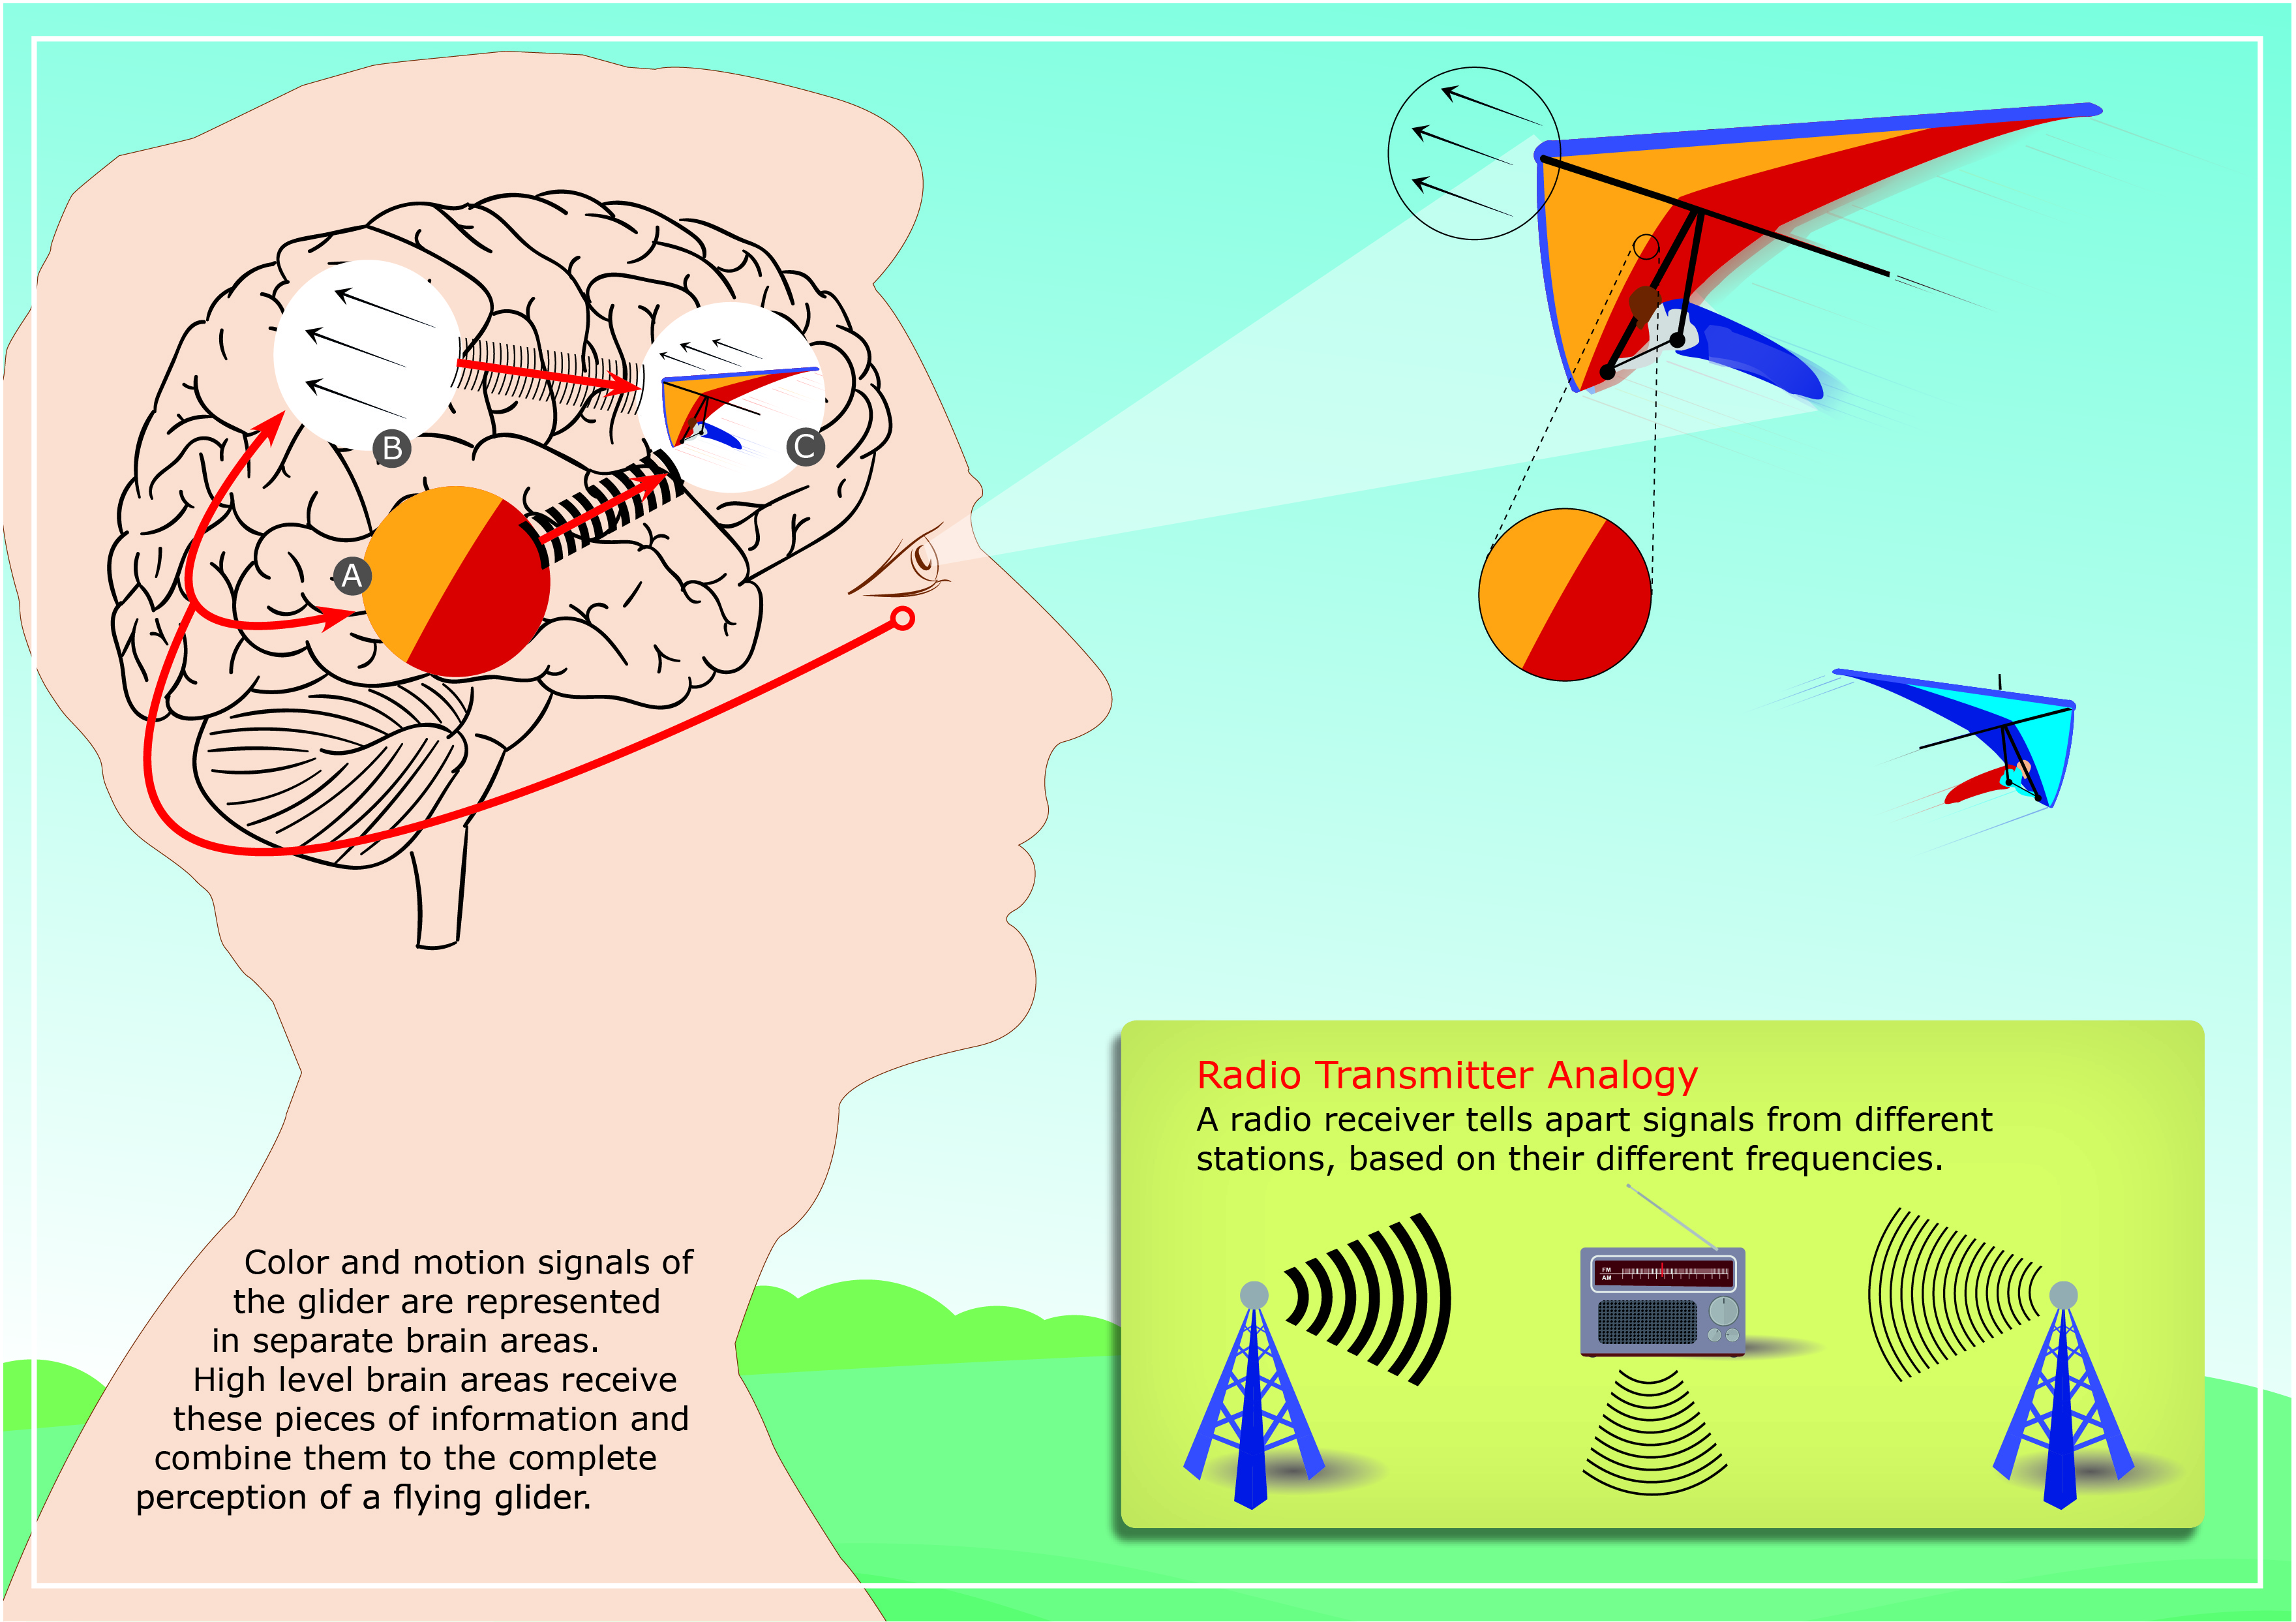 De forma similar a cómo un receptor de radio identifica el transmisor de radio desde el cual se origina una señal (insertada en la parte inferior derecha), las áreas de alto nivel de nuestro cerebro distinguen la fuente de una actividad de entrada neural en función de su frecuencia característica. En el dibujo de un cerebro humano, A y B marcan las áreas del cerebro dedicadas a analizar la información del color y la dirección del movimiento, respectivamente, y C denota áreas del cerebro de alto nivel que combinan la información sobre las características visuales individuales en una percepción unificada de los objetos visuales. En este ejemplo, el color y la dirección del movimiento del planeador seguido se analizan por separado en las áreas A y B, y luego se combinan en el área C para crear nuestra percepción única de todas las características del ala delta. Imagen: Centro Alemán de Primates.